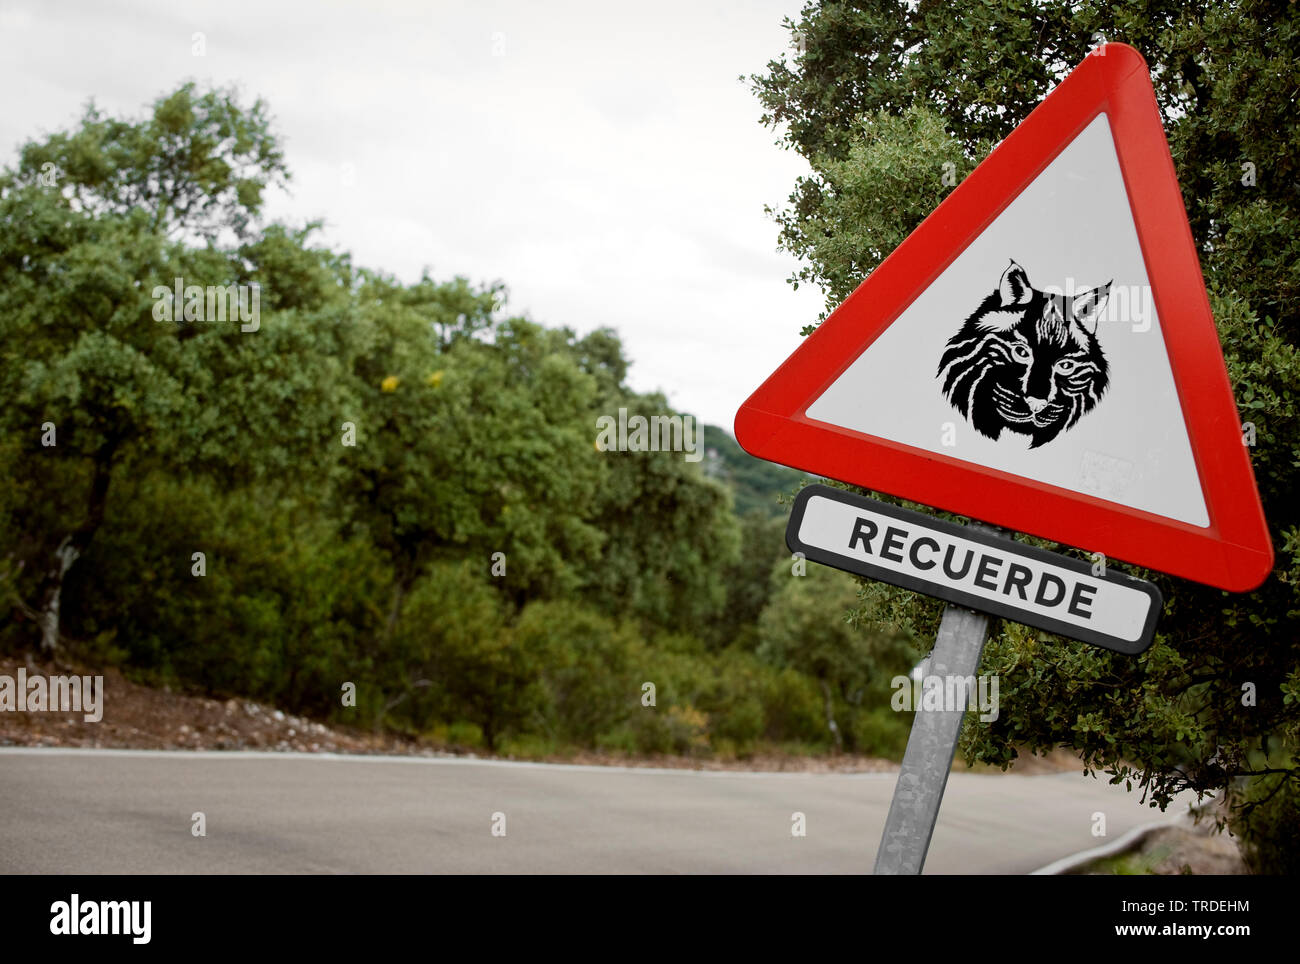 Lo spagnolo la lince, la lince iberica (Lynx pardinus), cartello stradale, Spagna, parco nazionale di Donana Foto Stock